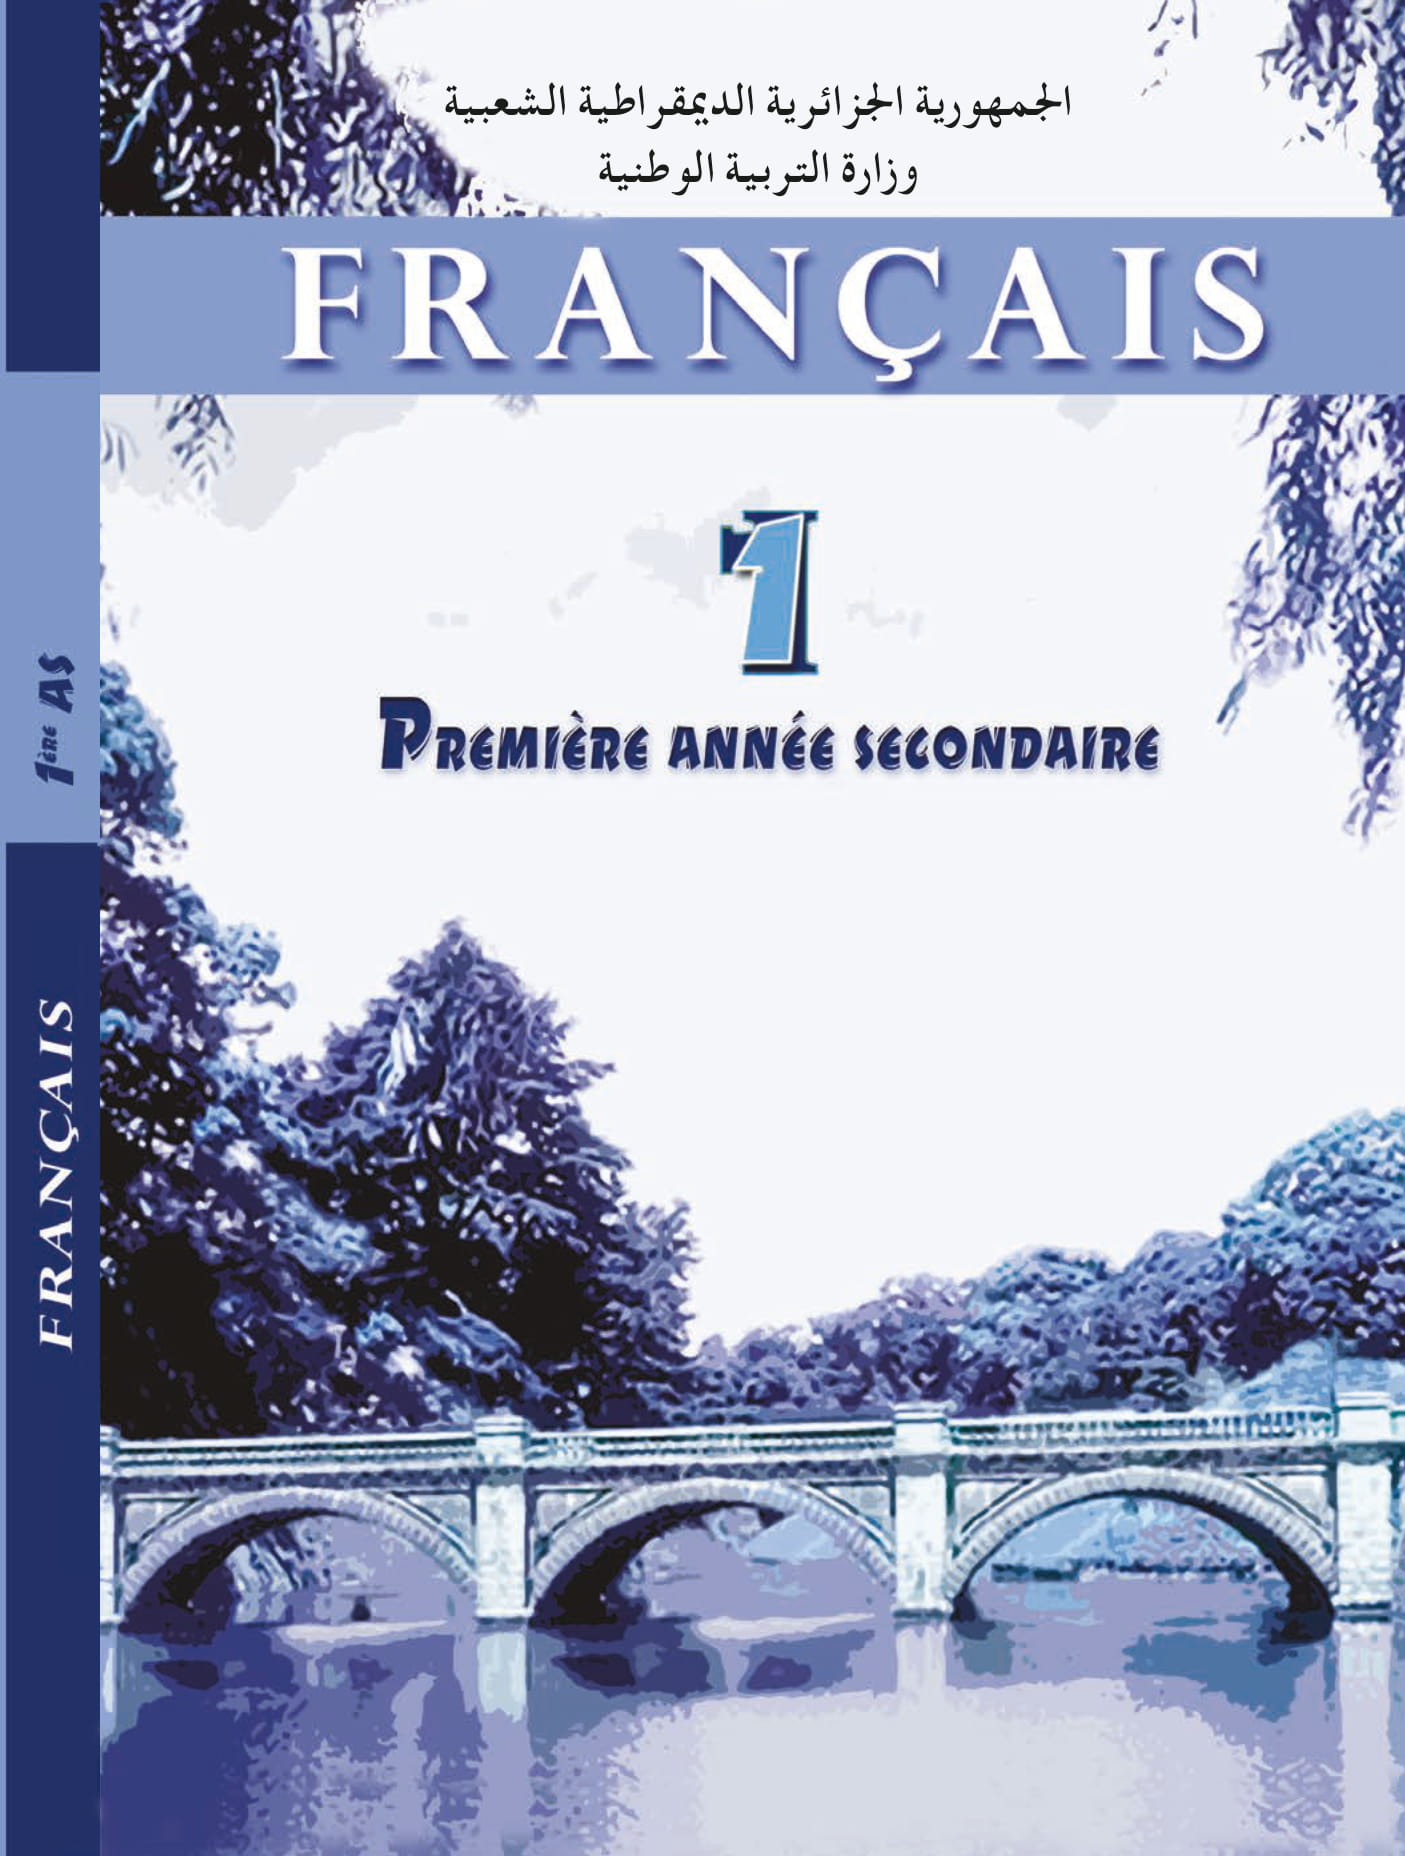 MS 1112 Couverture Francais 1AS 1 - الديوان الوطني للمطبوعات المدرسية